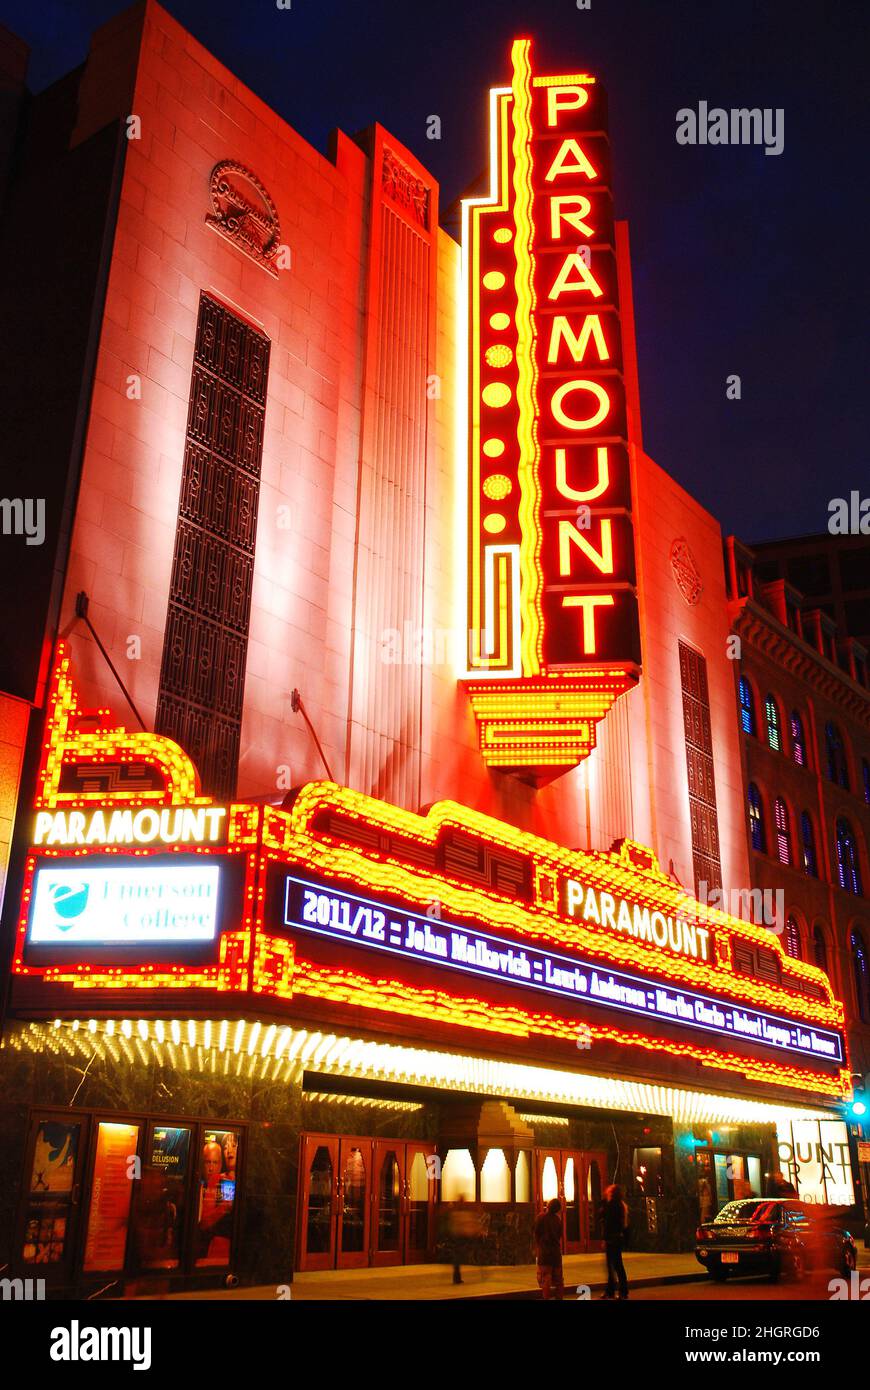 The Histoiric Paramount Theater in Boston Stock Photo